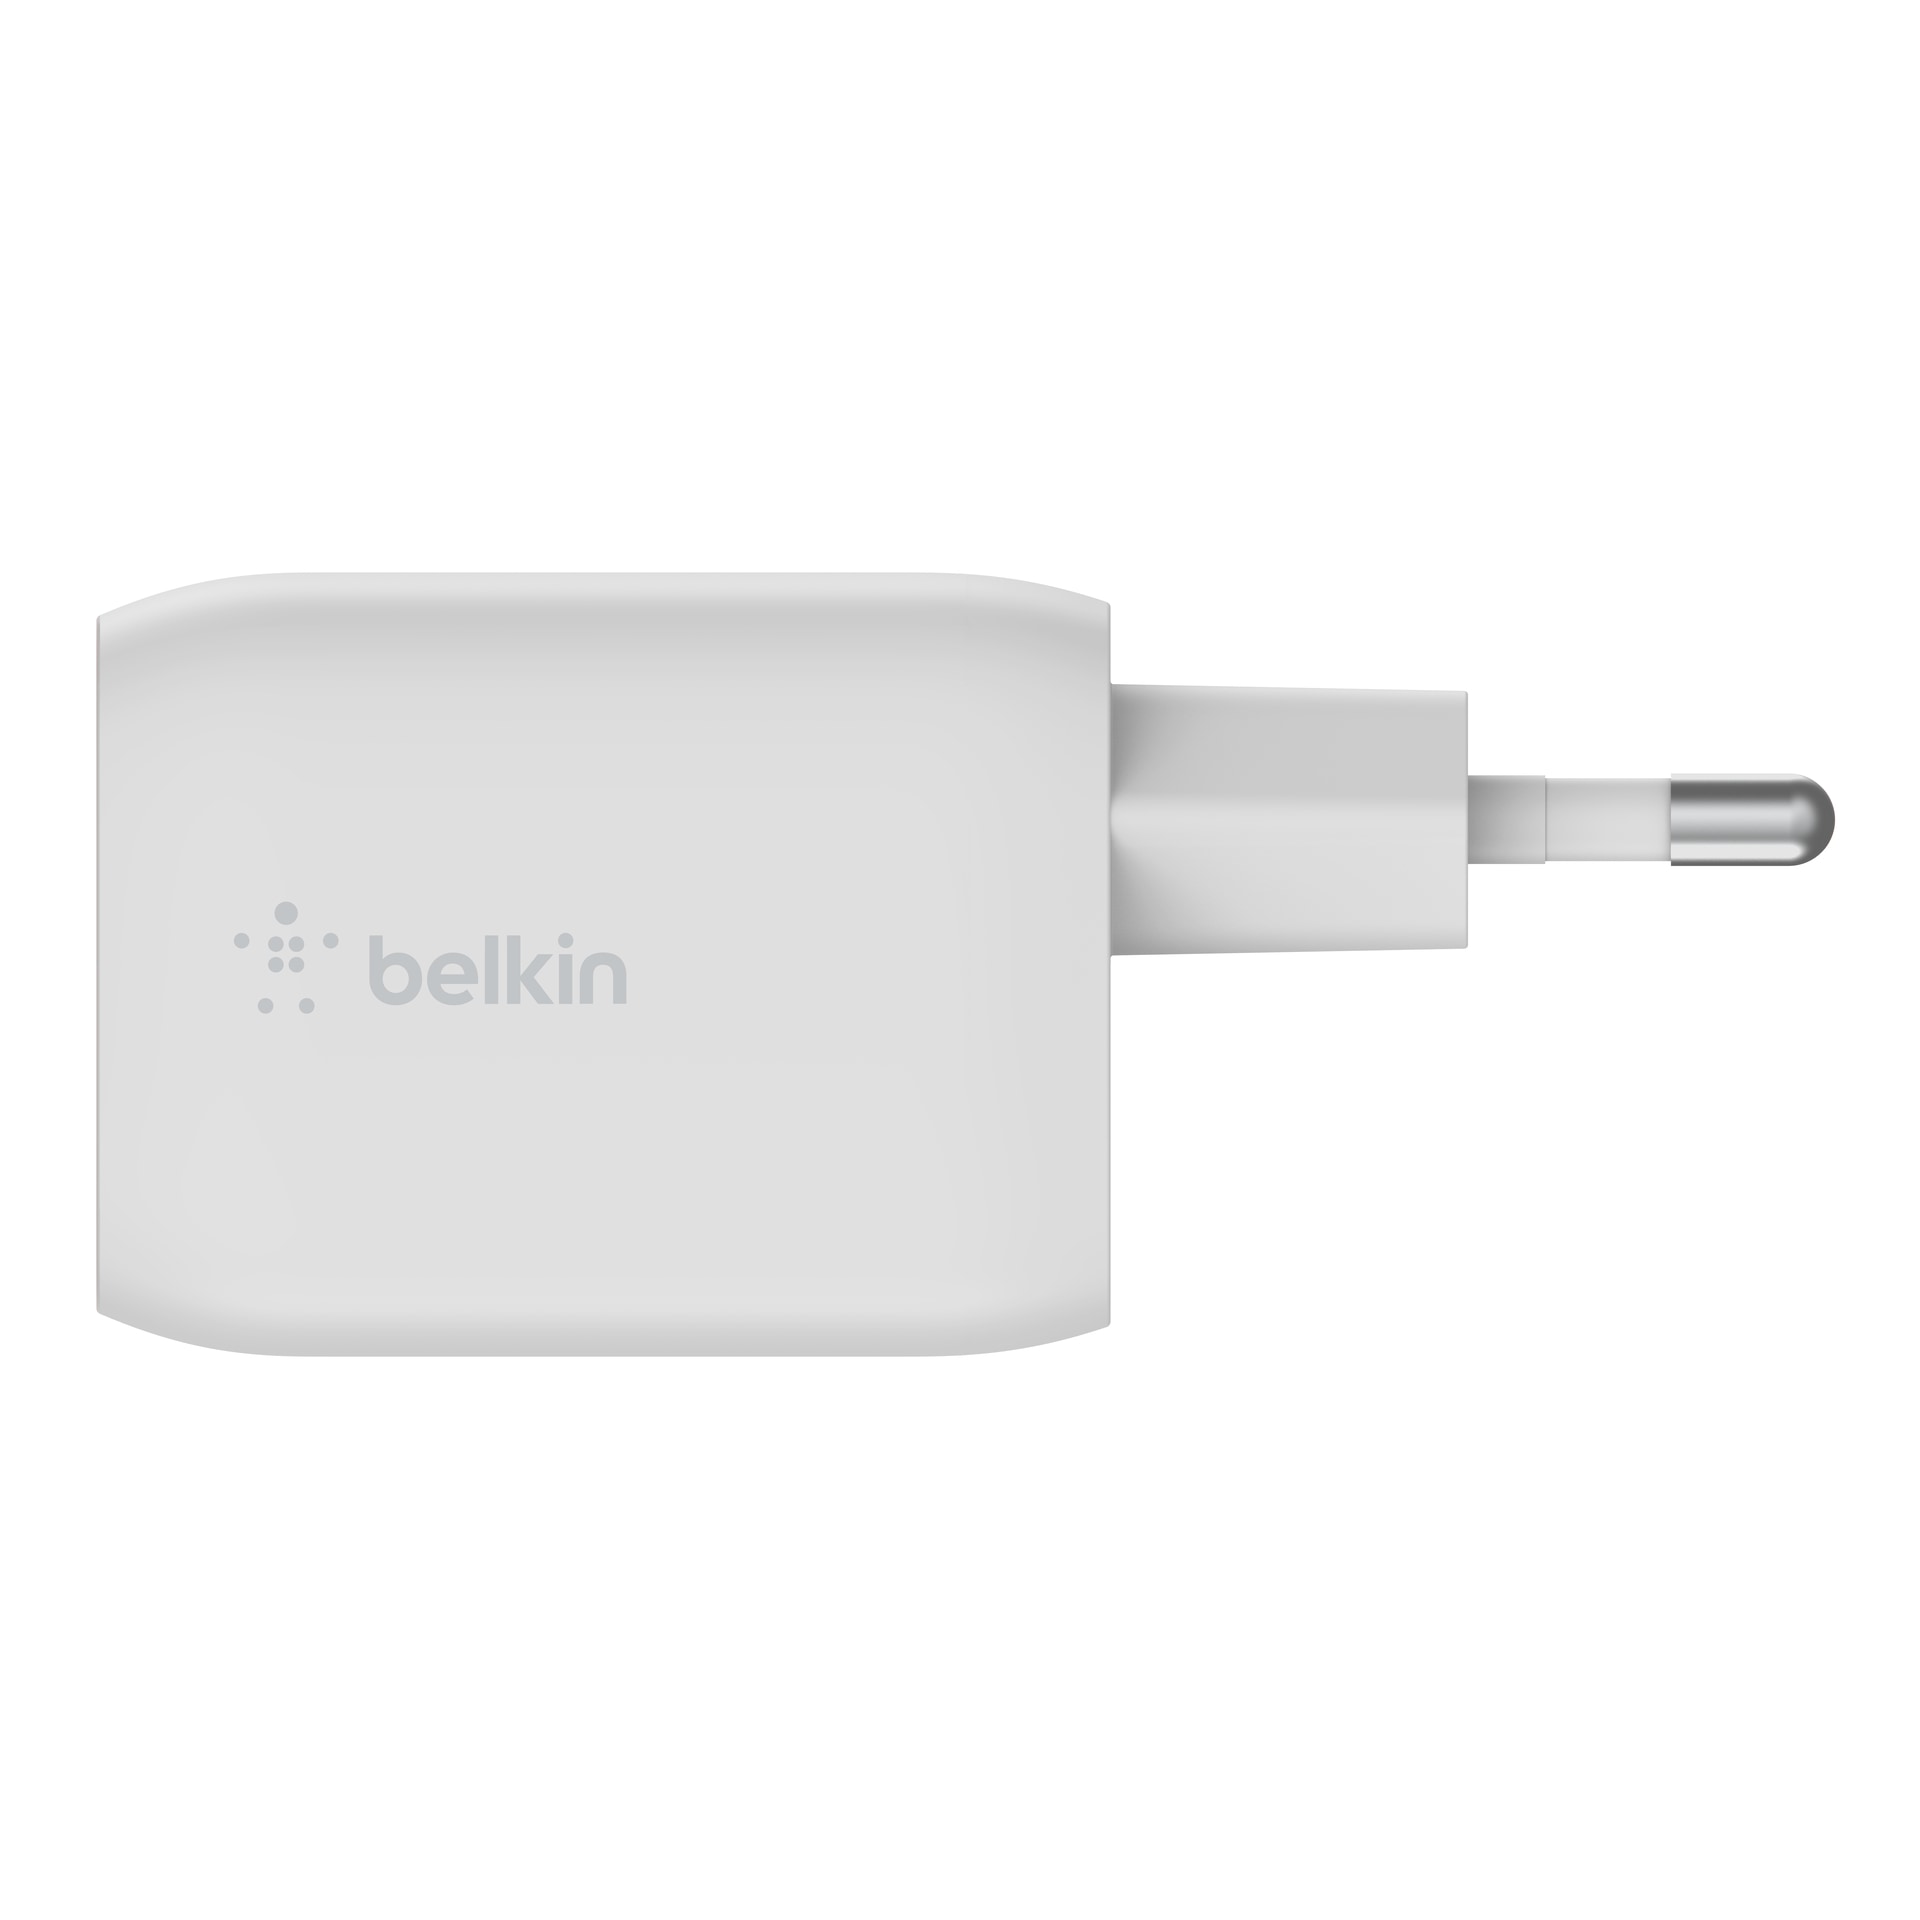 Belkin USB-Ladegerät »65W Dual USB-C GaN Ladegerät mit PD und PPS + 2m Kabel«, für Apple iPhone Samsung Galaxy Google Pixel